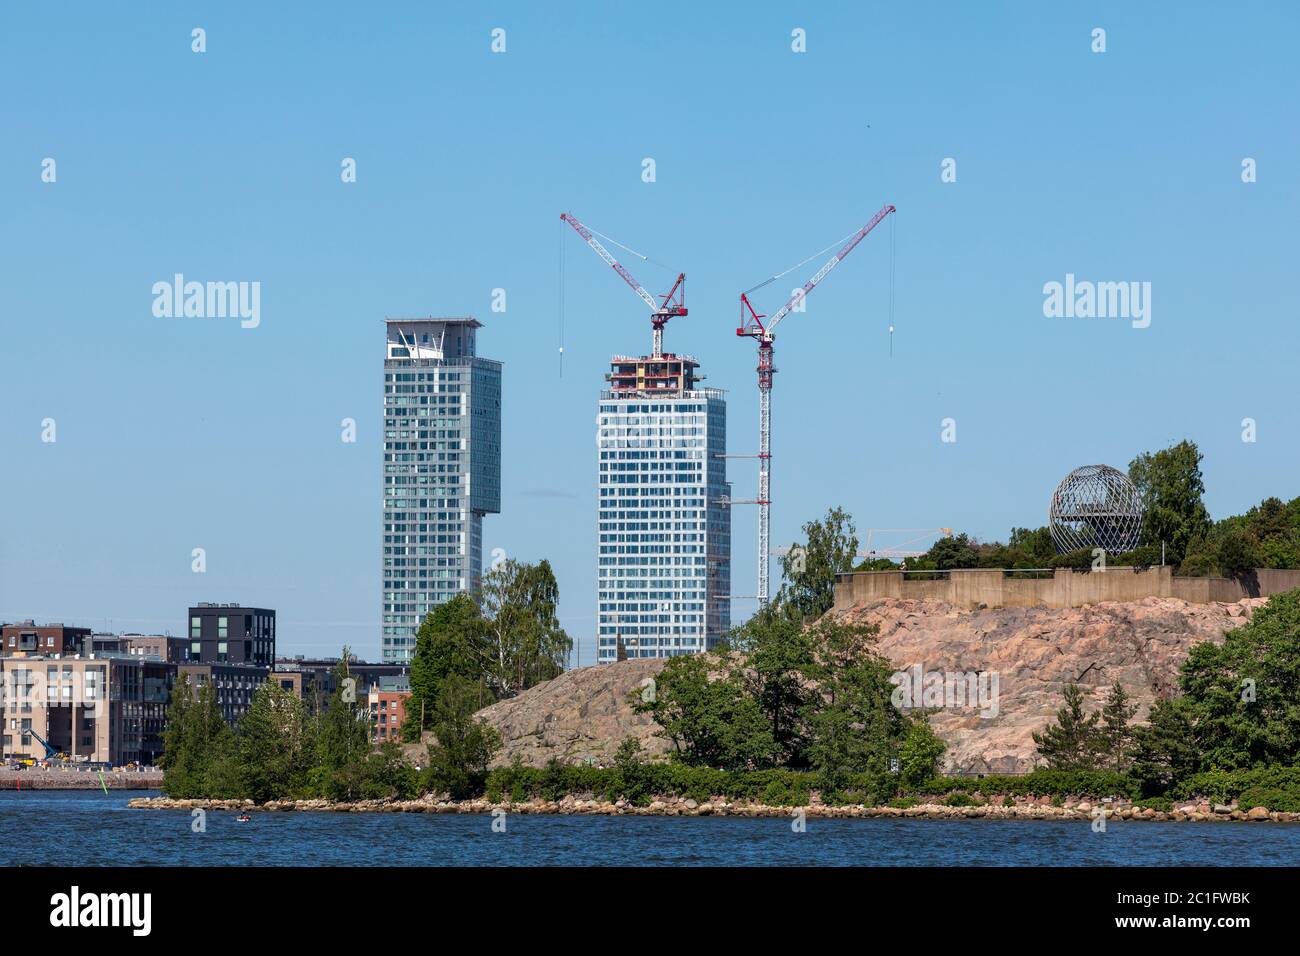 Die Stadt Helsinki ist von Osten, Süden und Westen vom Meer umgeben. Neues Wohnviertel, Kalasatama, hat höchste Wohngebäude in der Stadt. Stockfoto